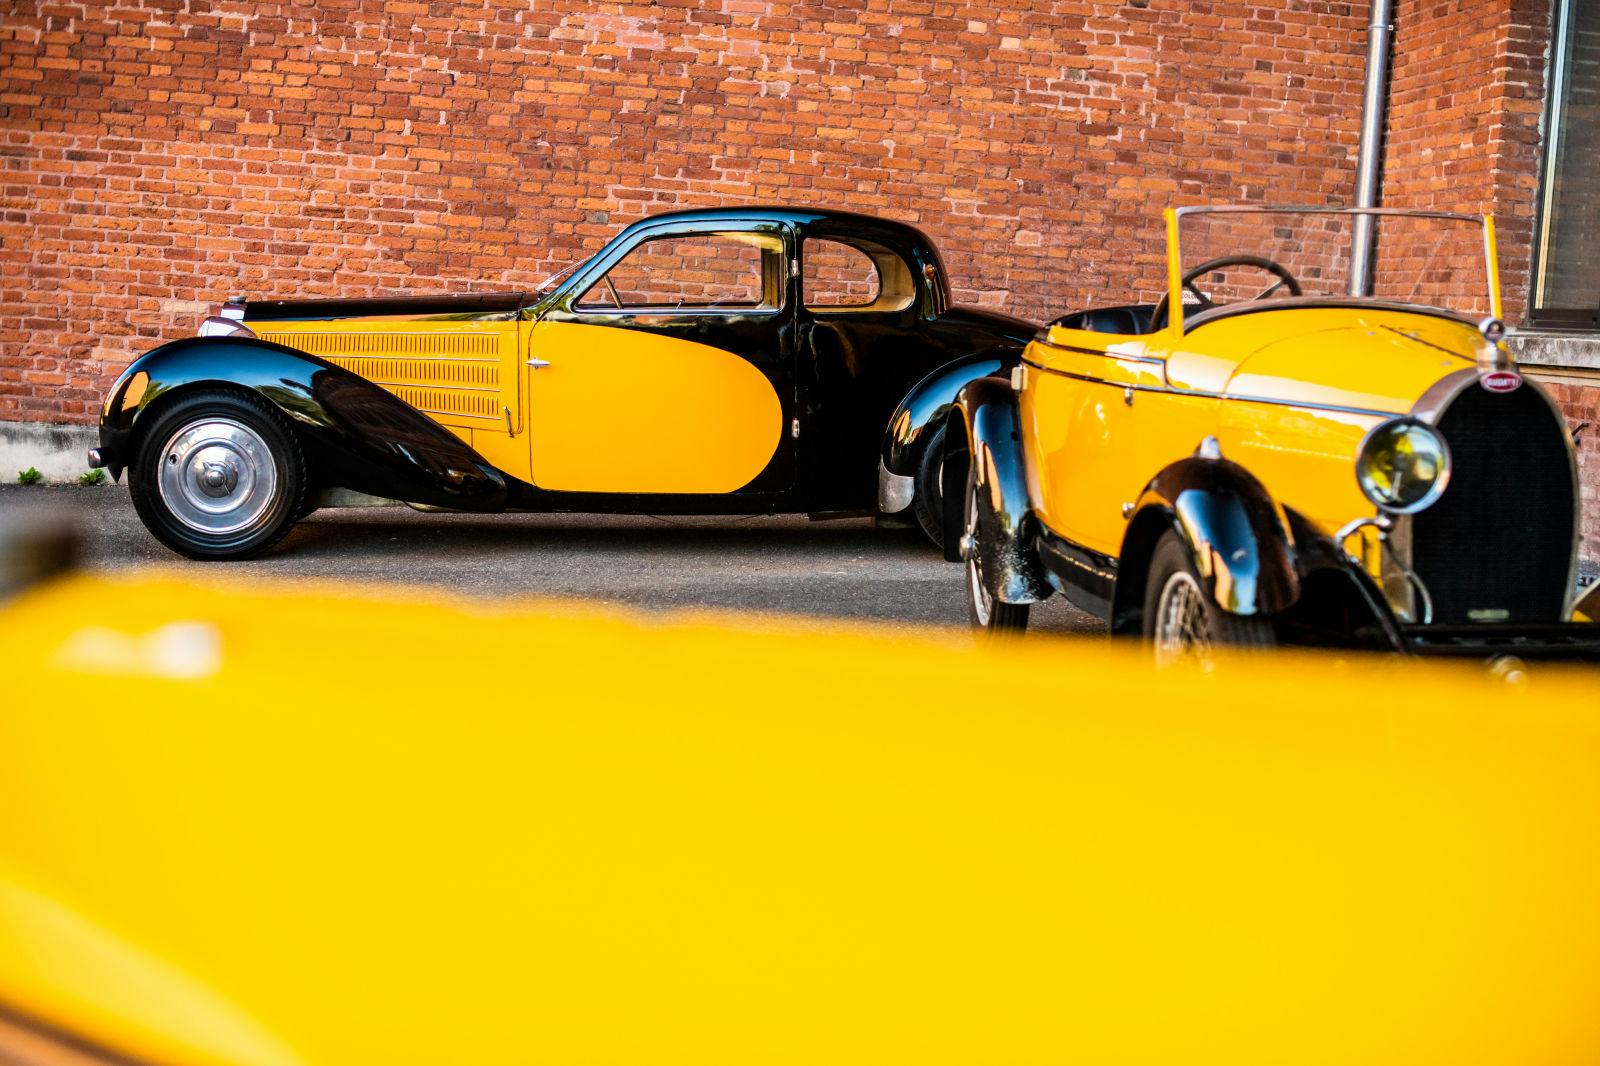 The favorite color combination of Ettore Bugatti: black and yellow.